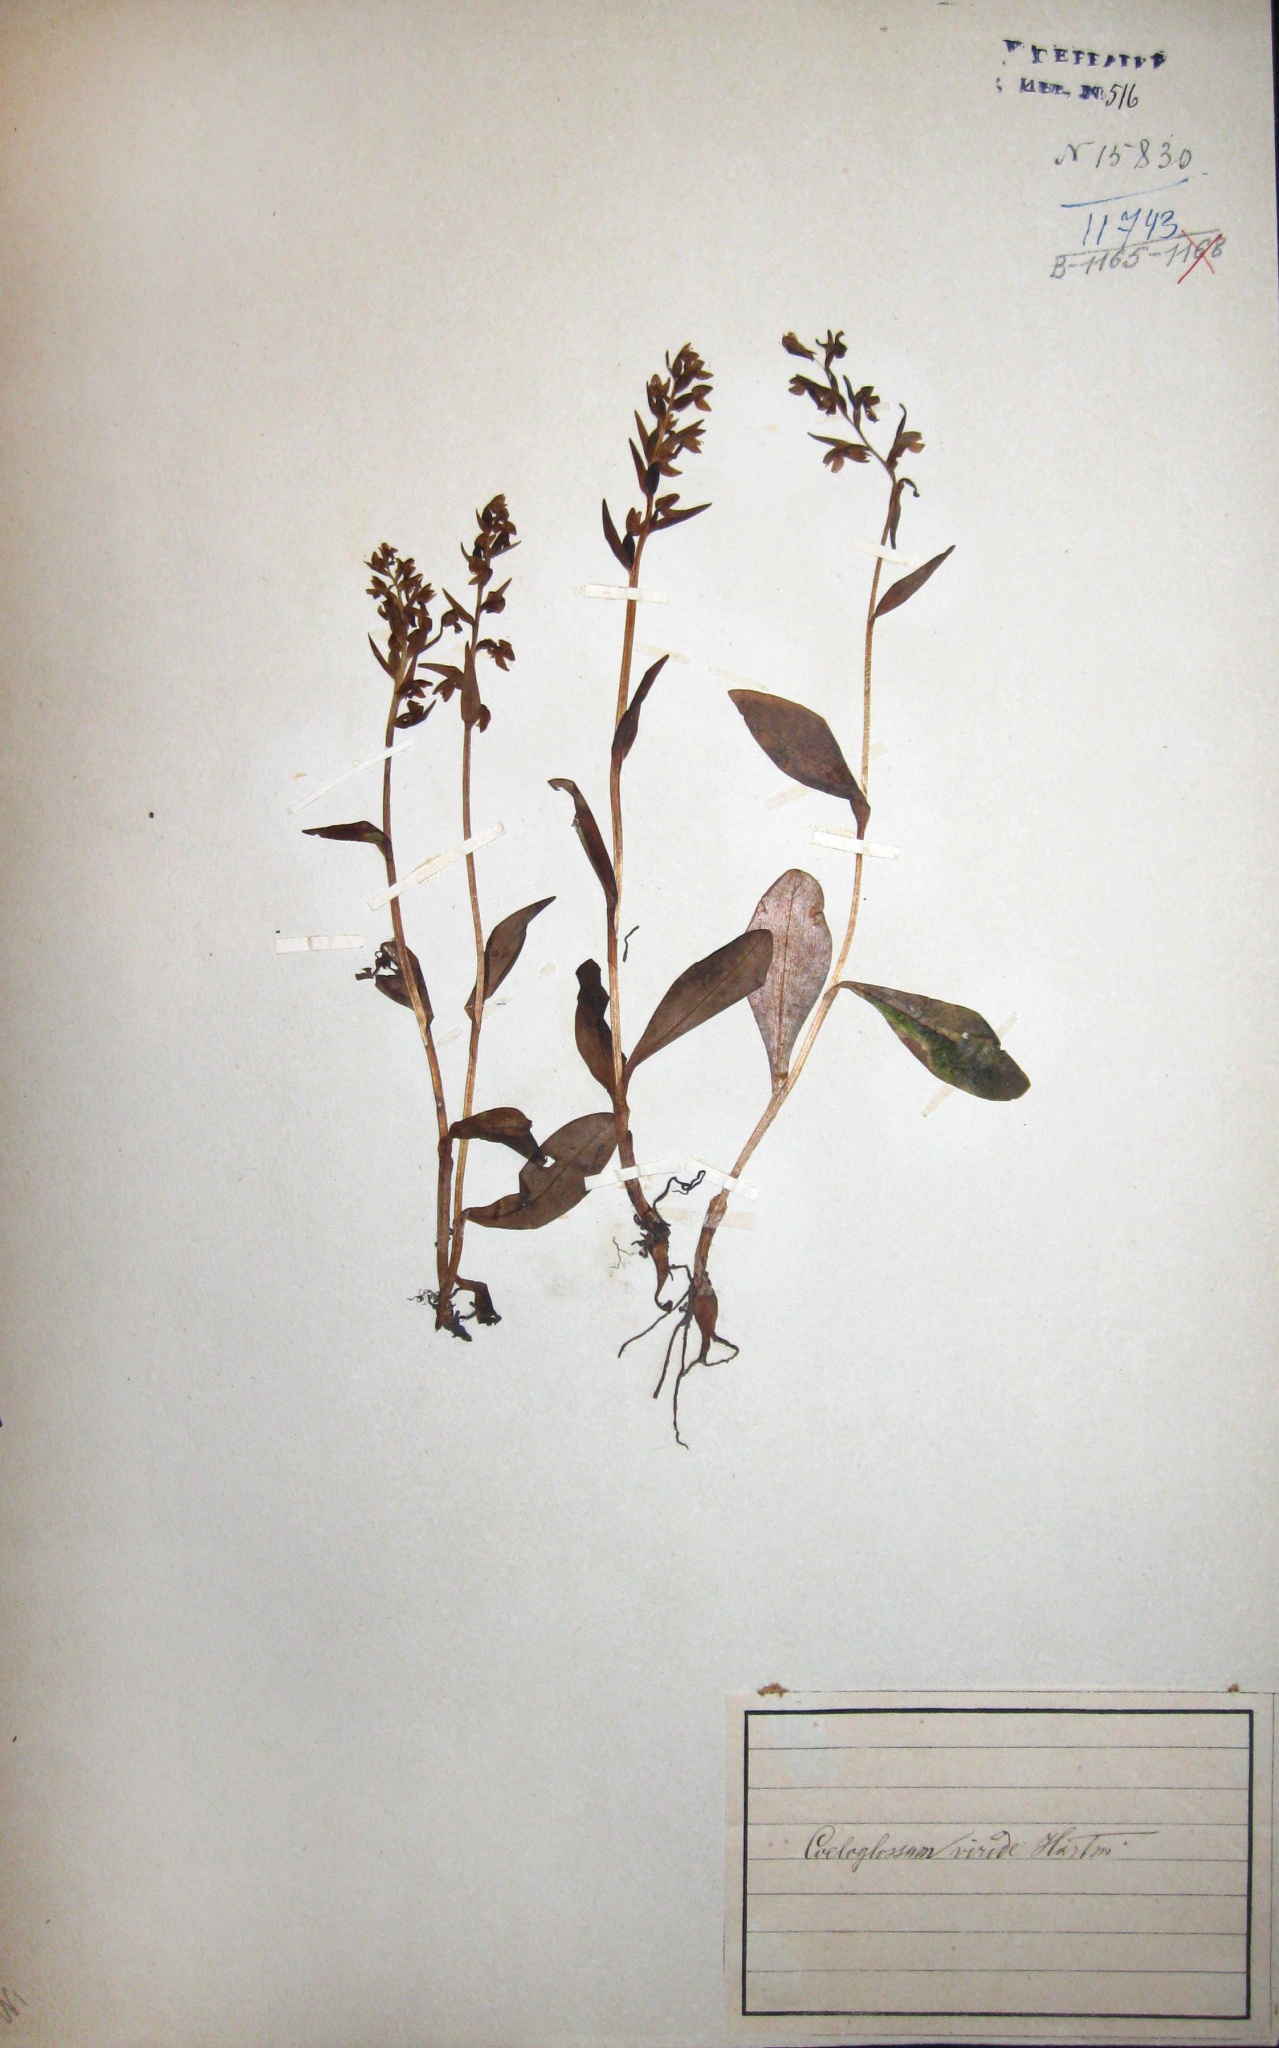 Пололепестник зеленый (Coeloglossum viride) — редкий вид, занесенный в Красную книгу Ярославской области.